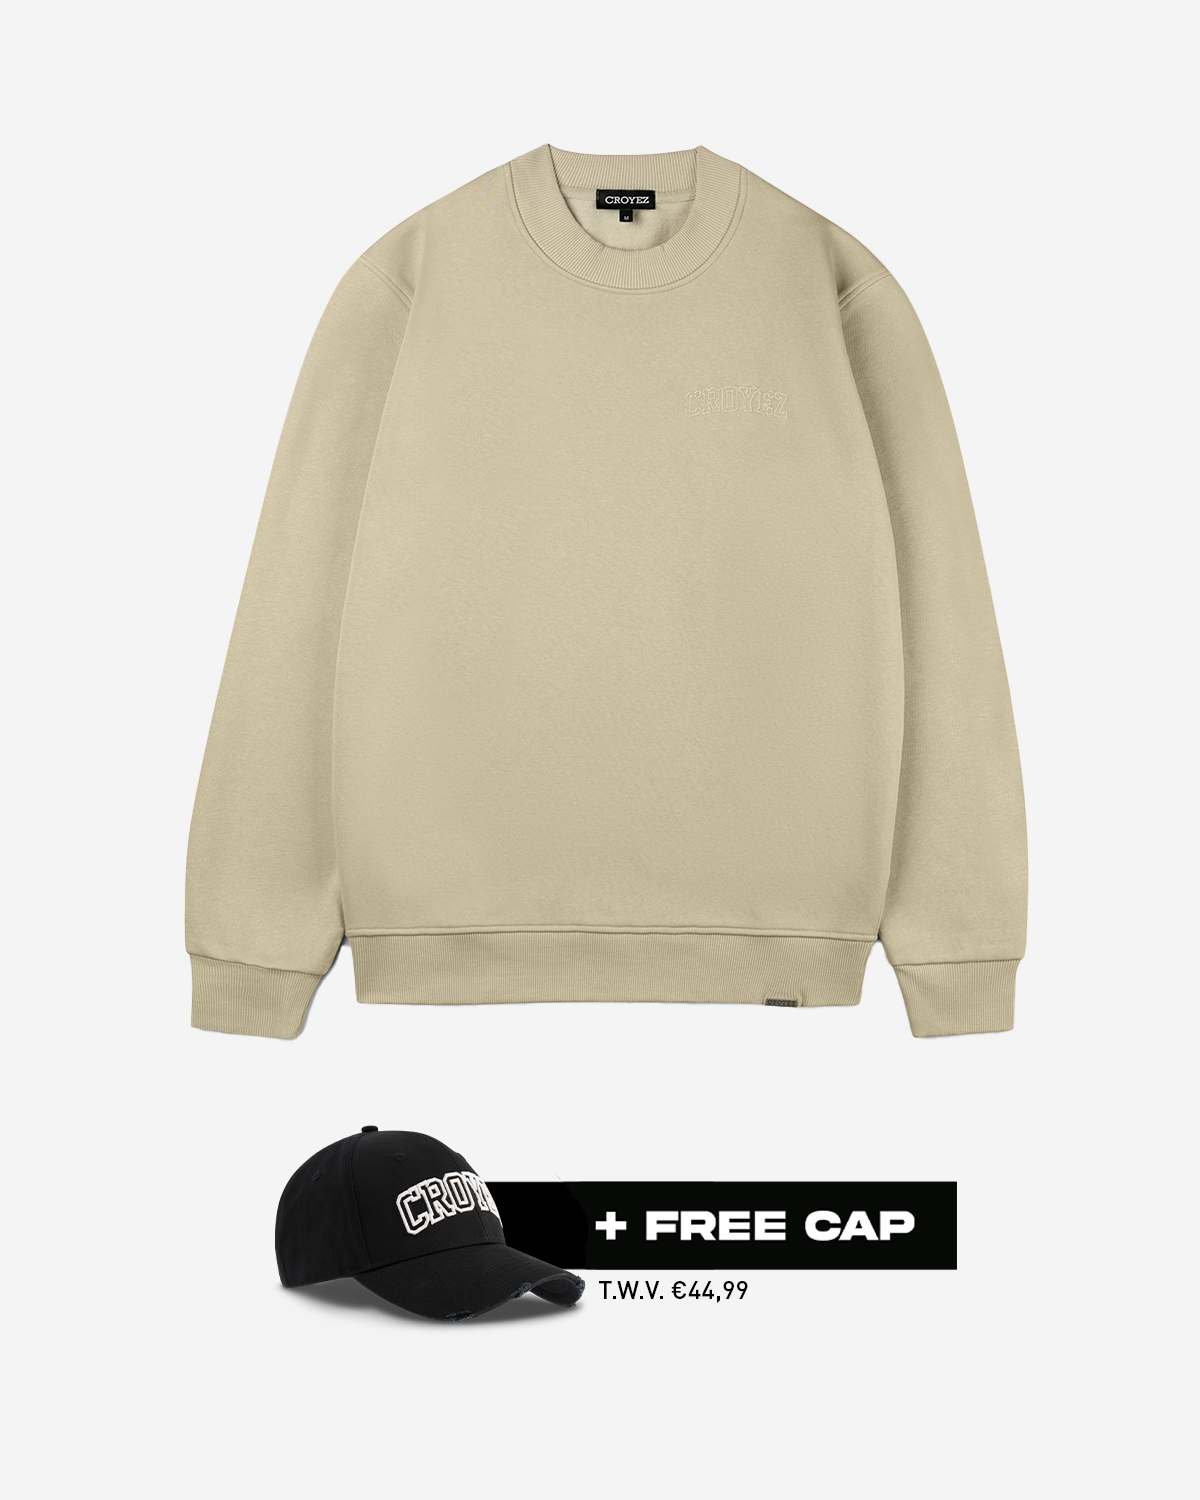 Croyez Arch Sweater Zand + Free Cap